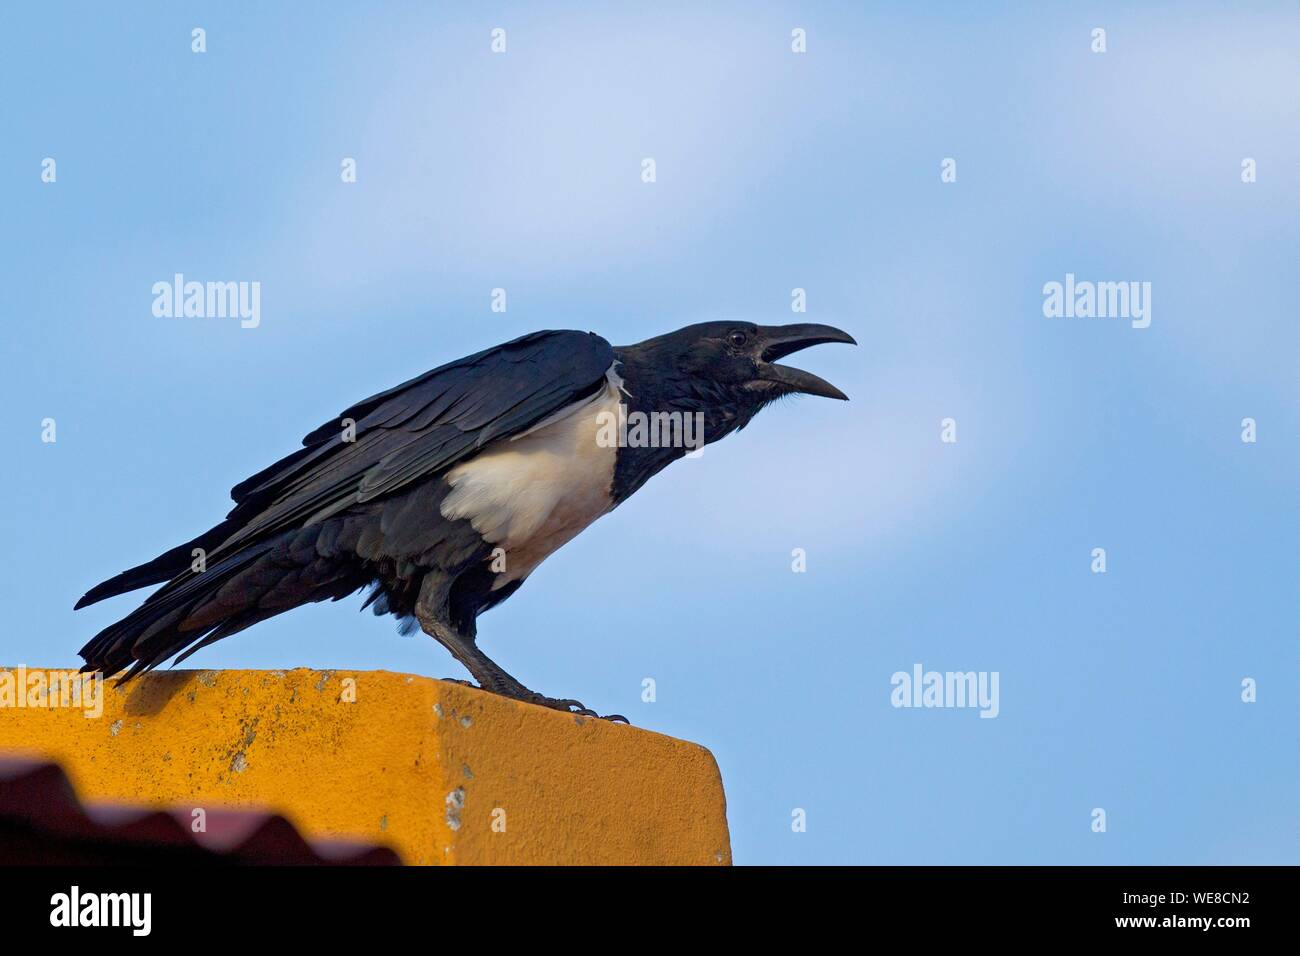 Burundi, Nkoma, Kumoso, pied crow (Corvus albus) Stock Photo